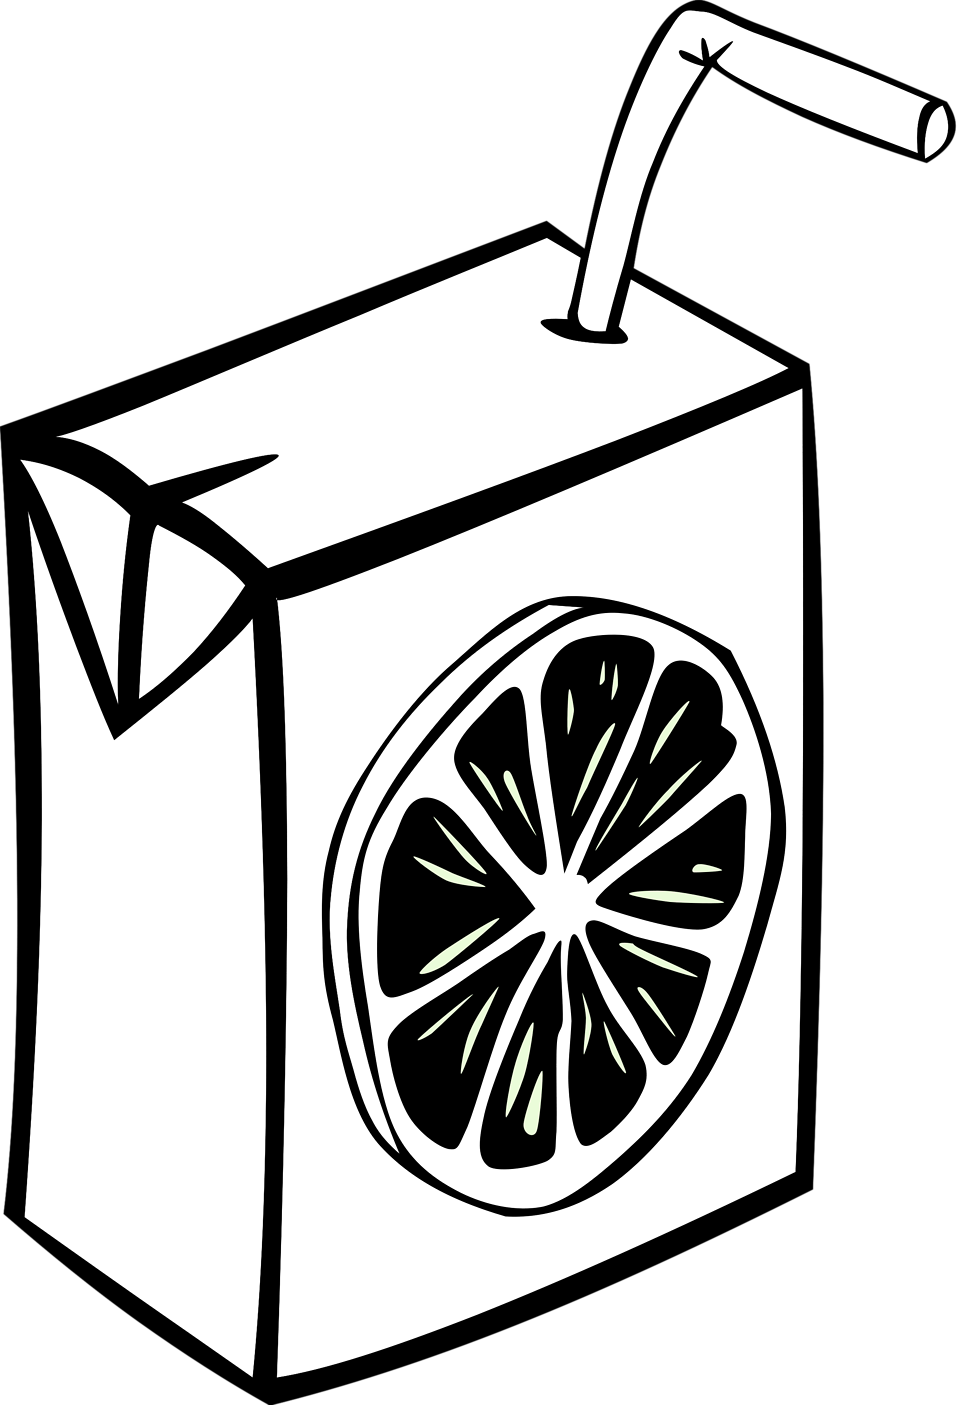 Juice Box Clip Art - Tumundografico